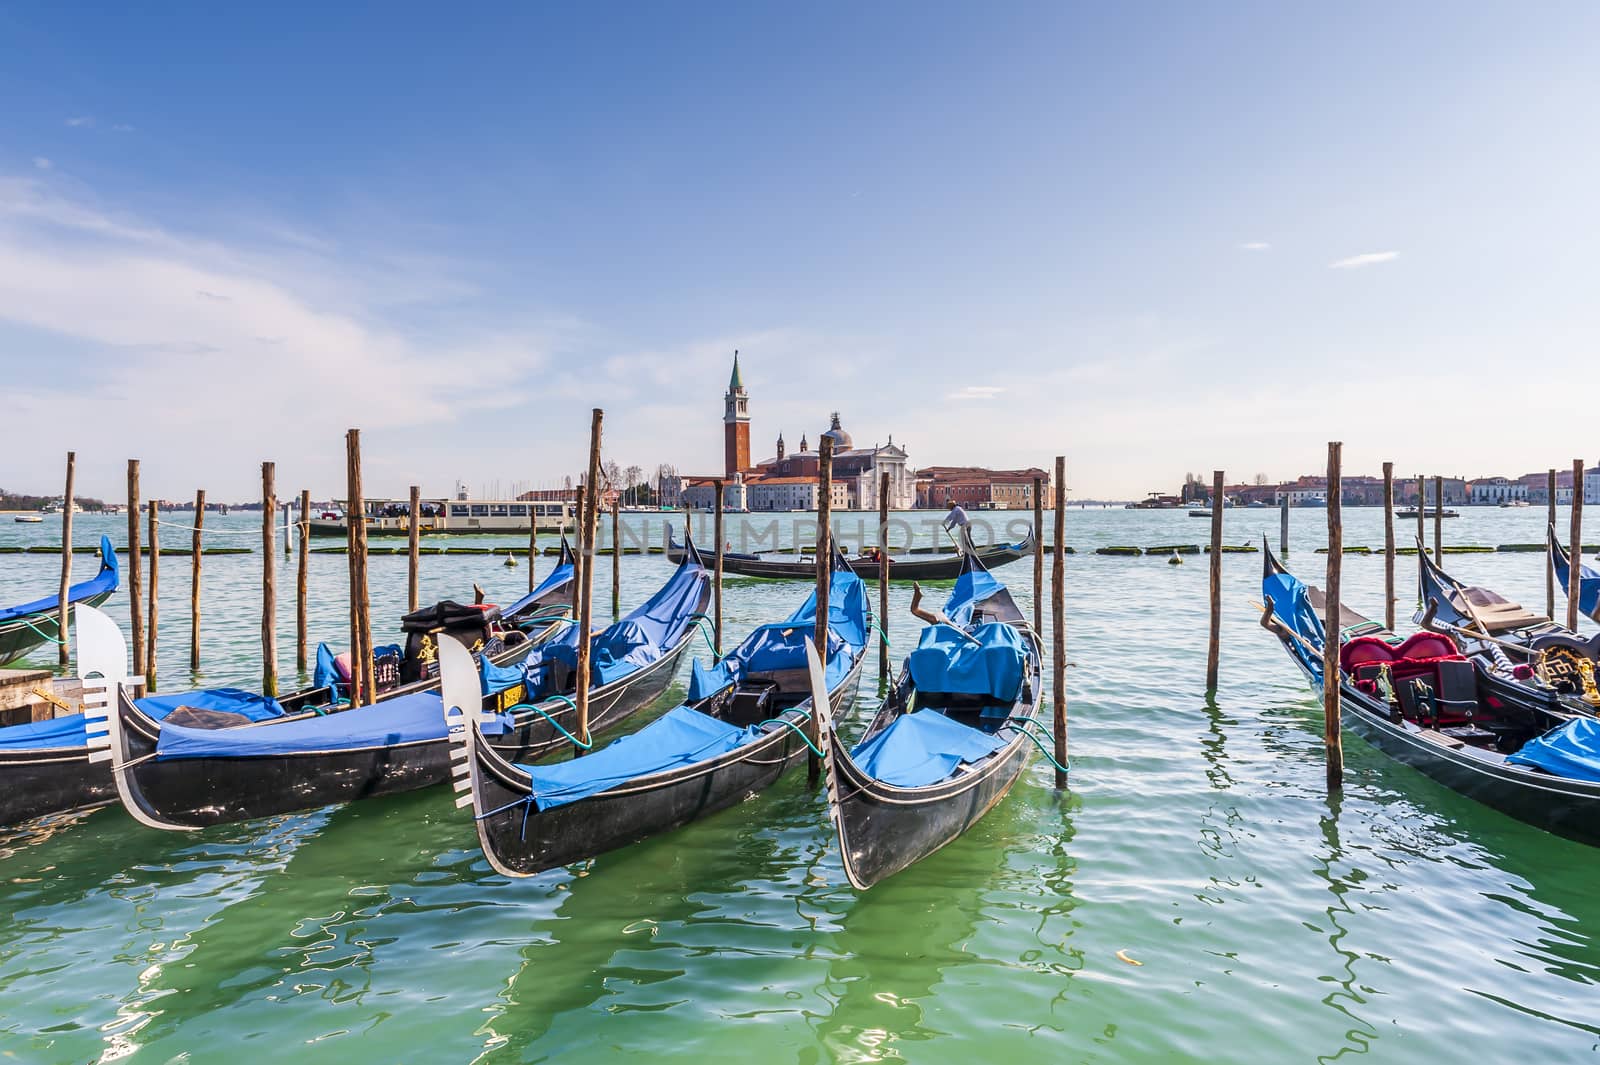 Gondolas and San Giorgio Maggiore Island in the background in the Venice Lagoon in Veneto, Italy by Frederic